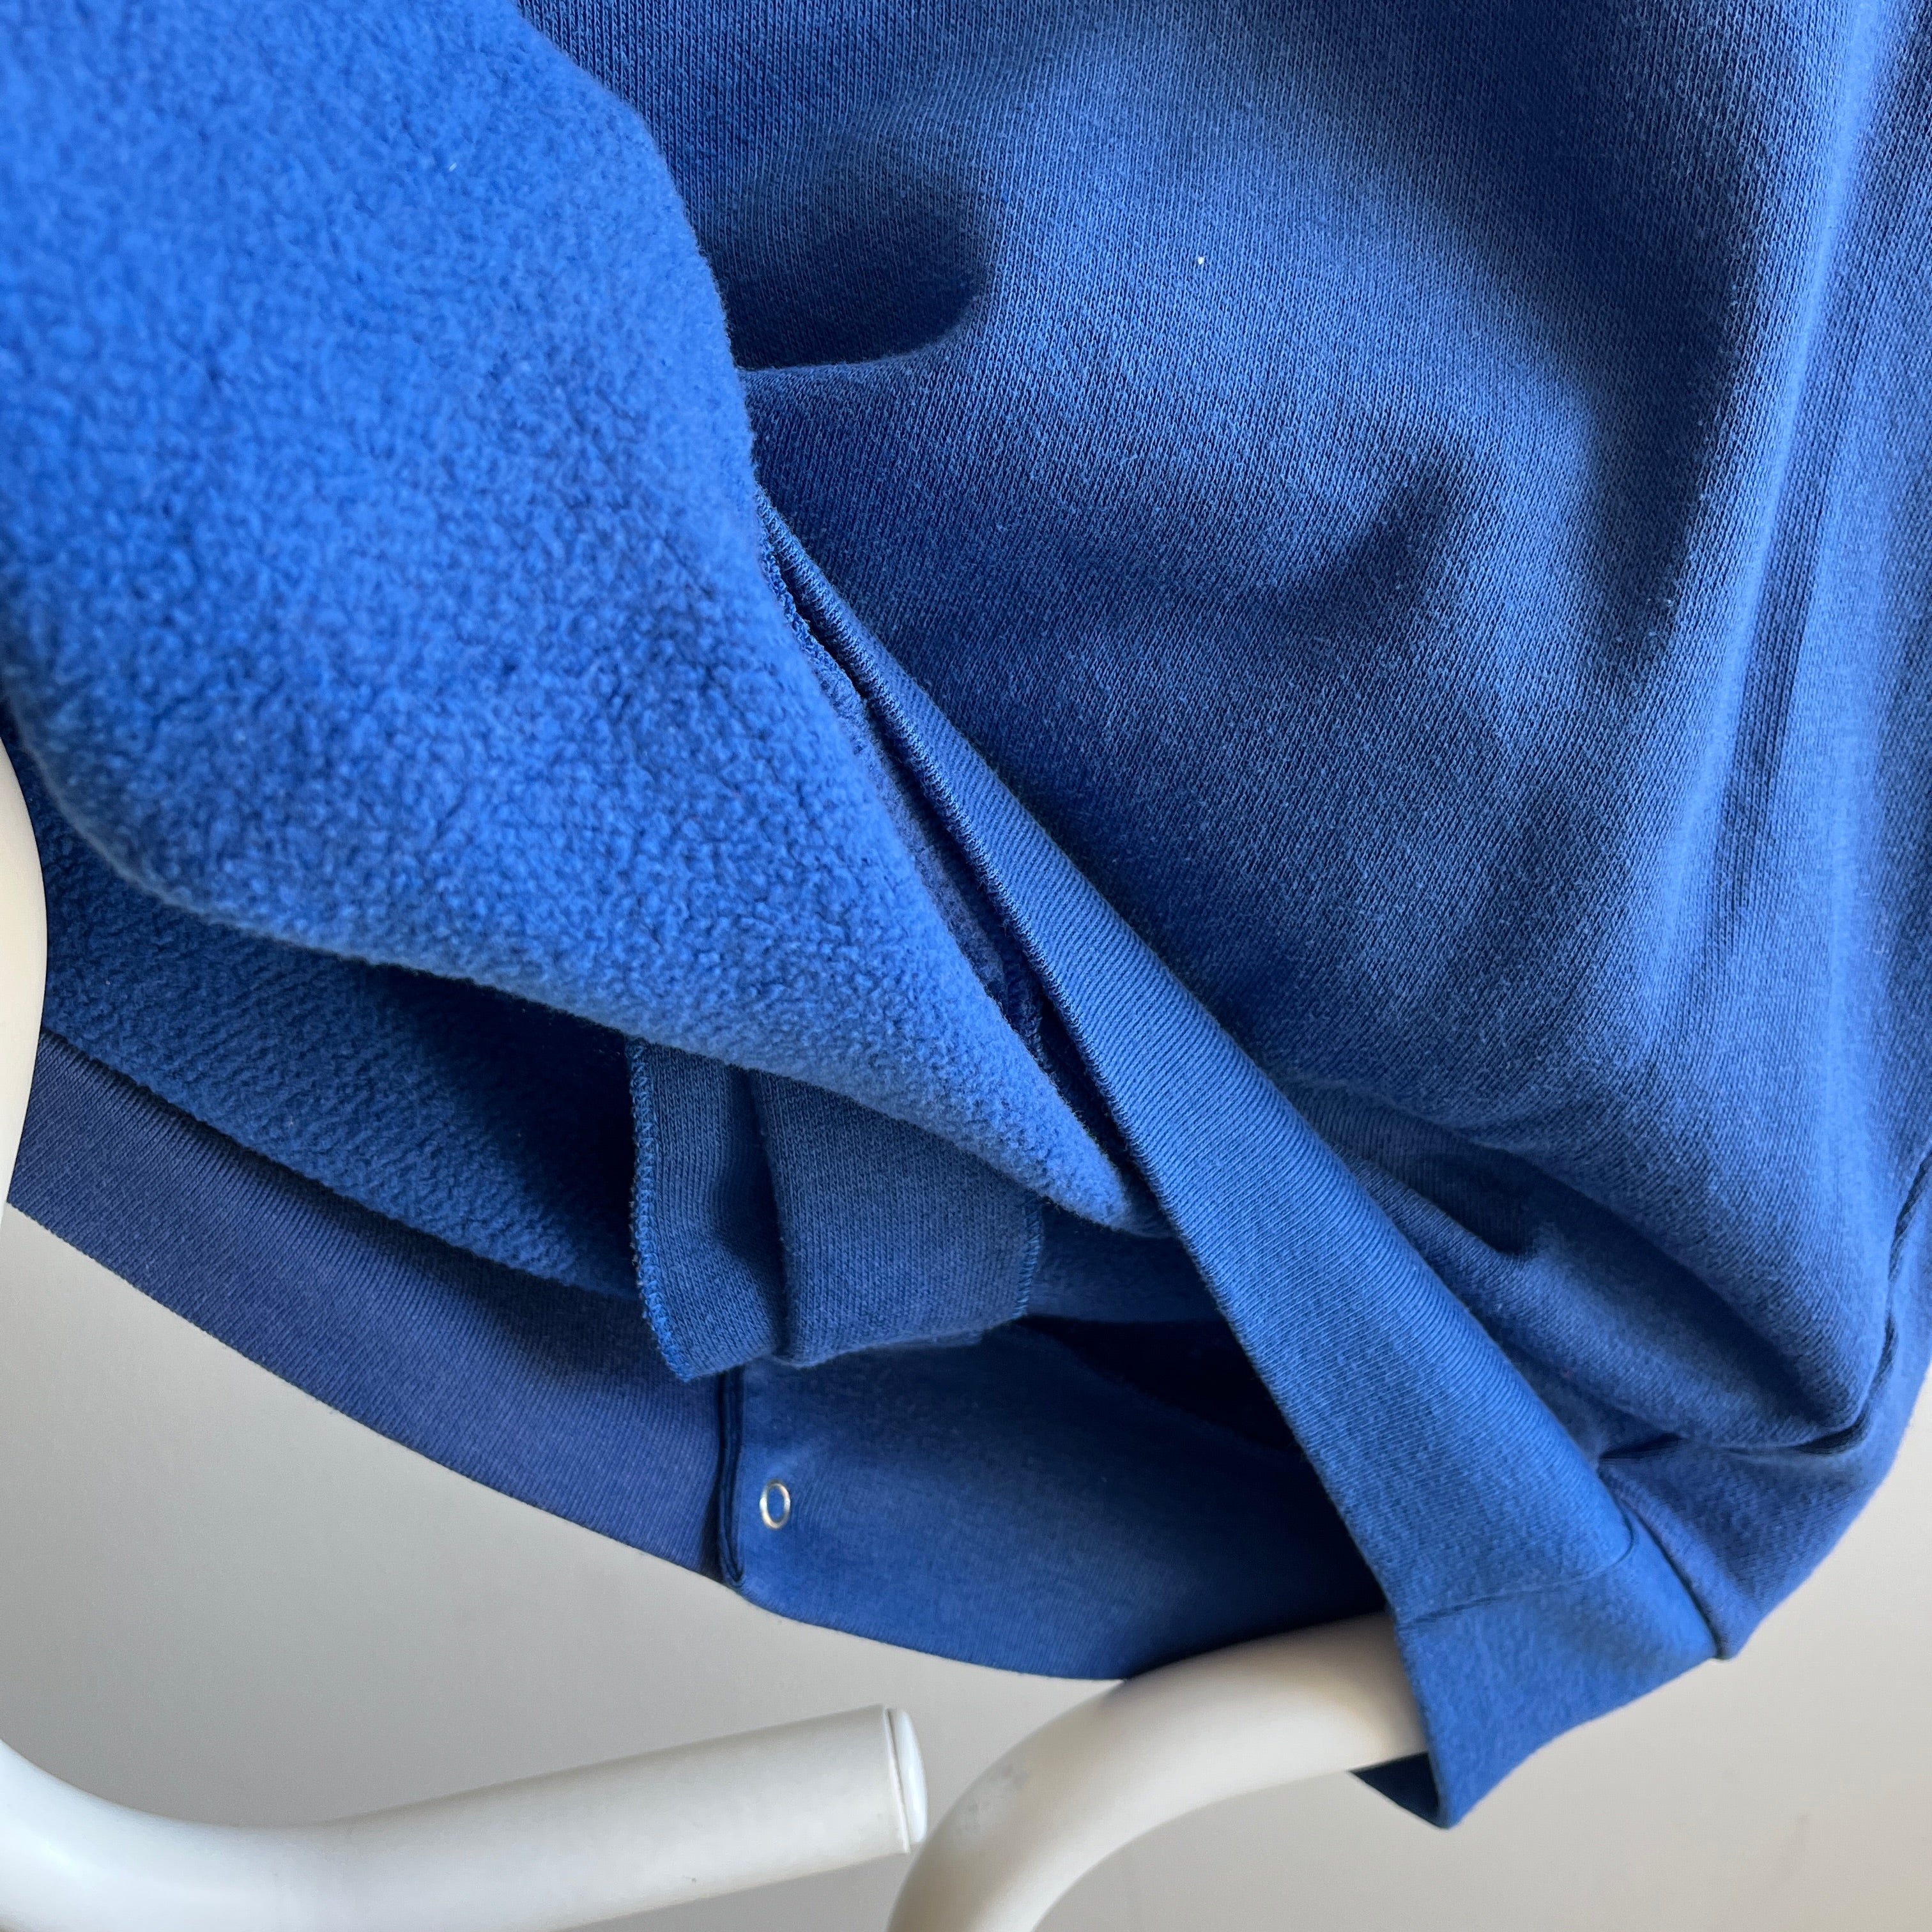 Veste molletonnée bleue à bouton-pression années 1980